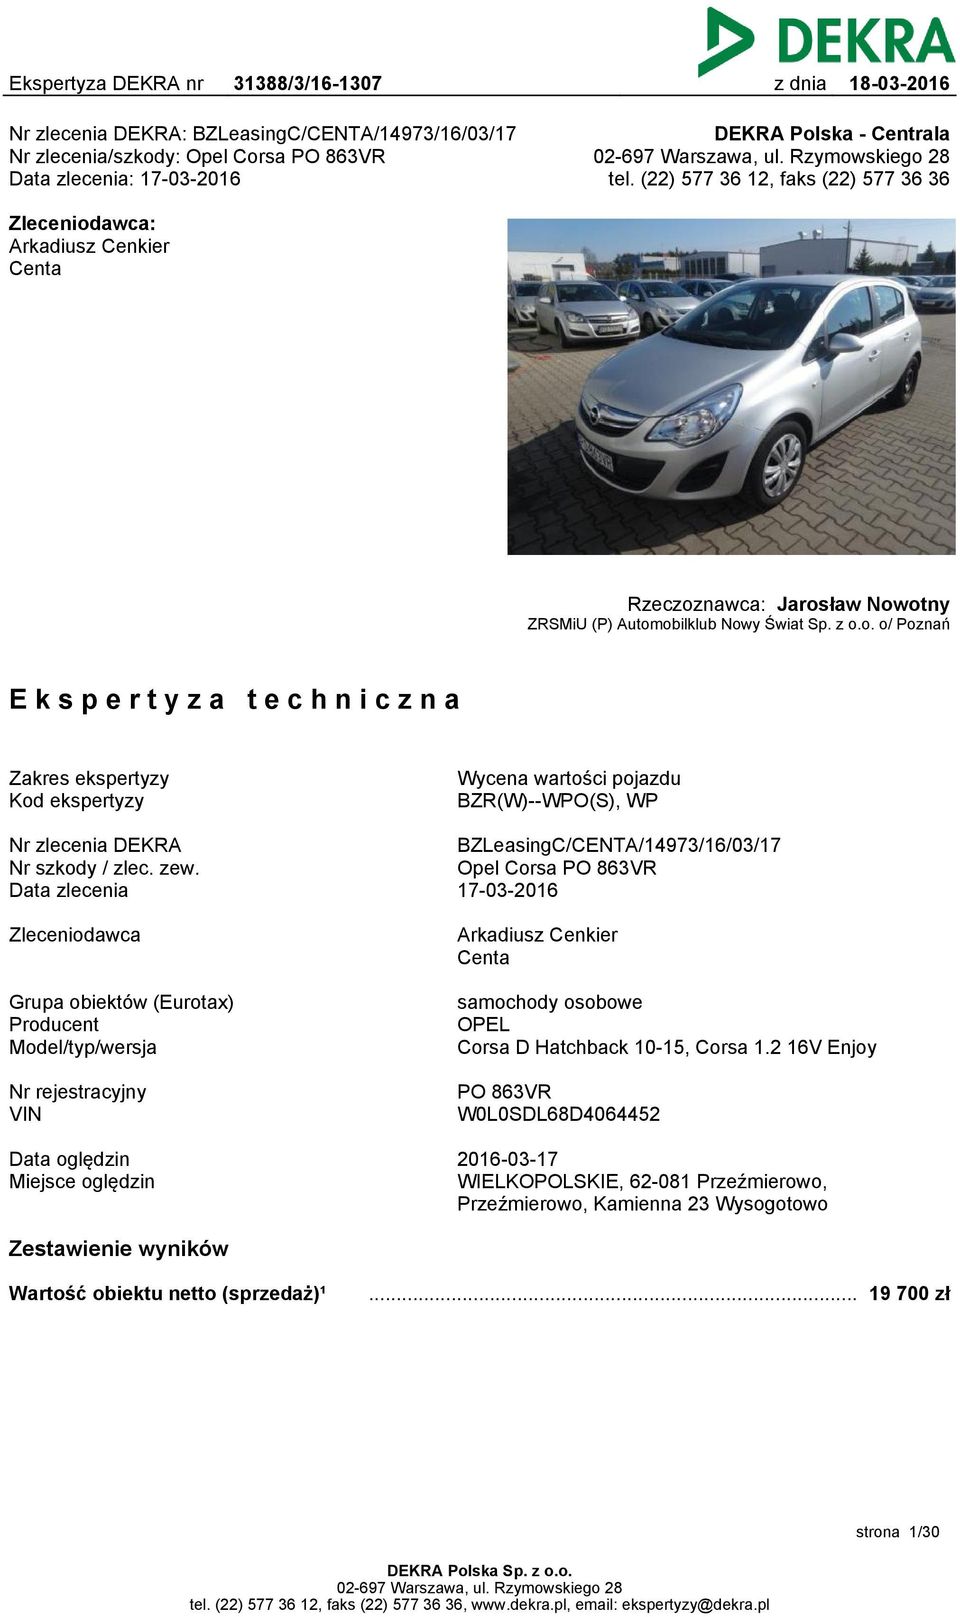 zew. Data zlecenia BZLeasingC/CENTA/14973/16/03/17 Opel Corsa PO 863VR 17-03-2016 Zleceniodawca Arkadiusz Cenkier Centa Grupa obiektów (Eurotax) Producent Model/typ/wersja samochody osobowe OPEL